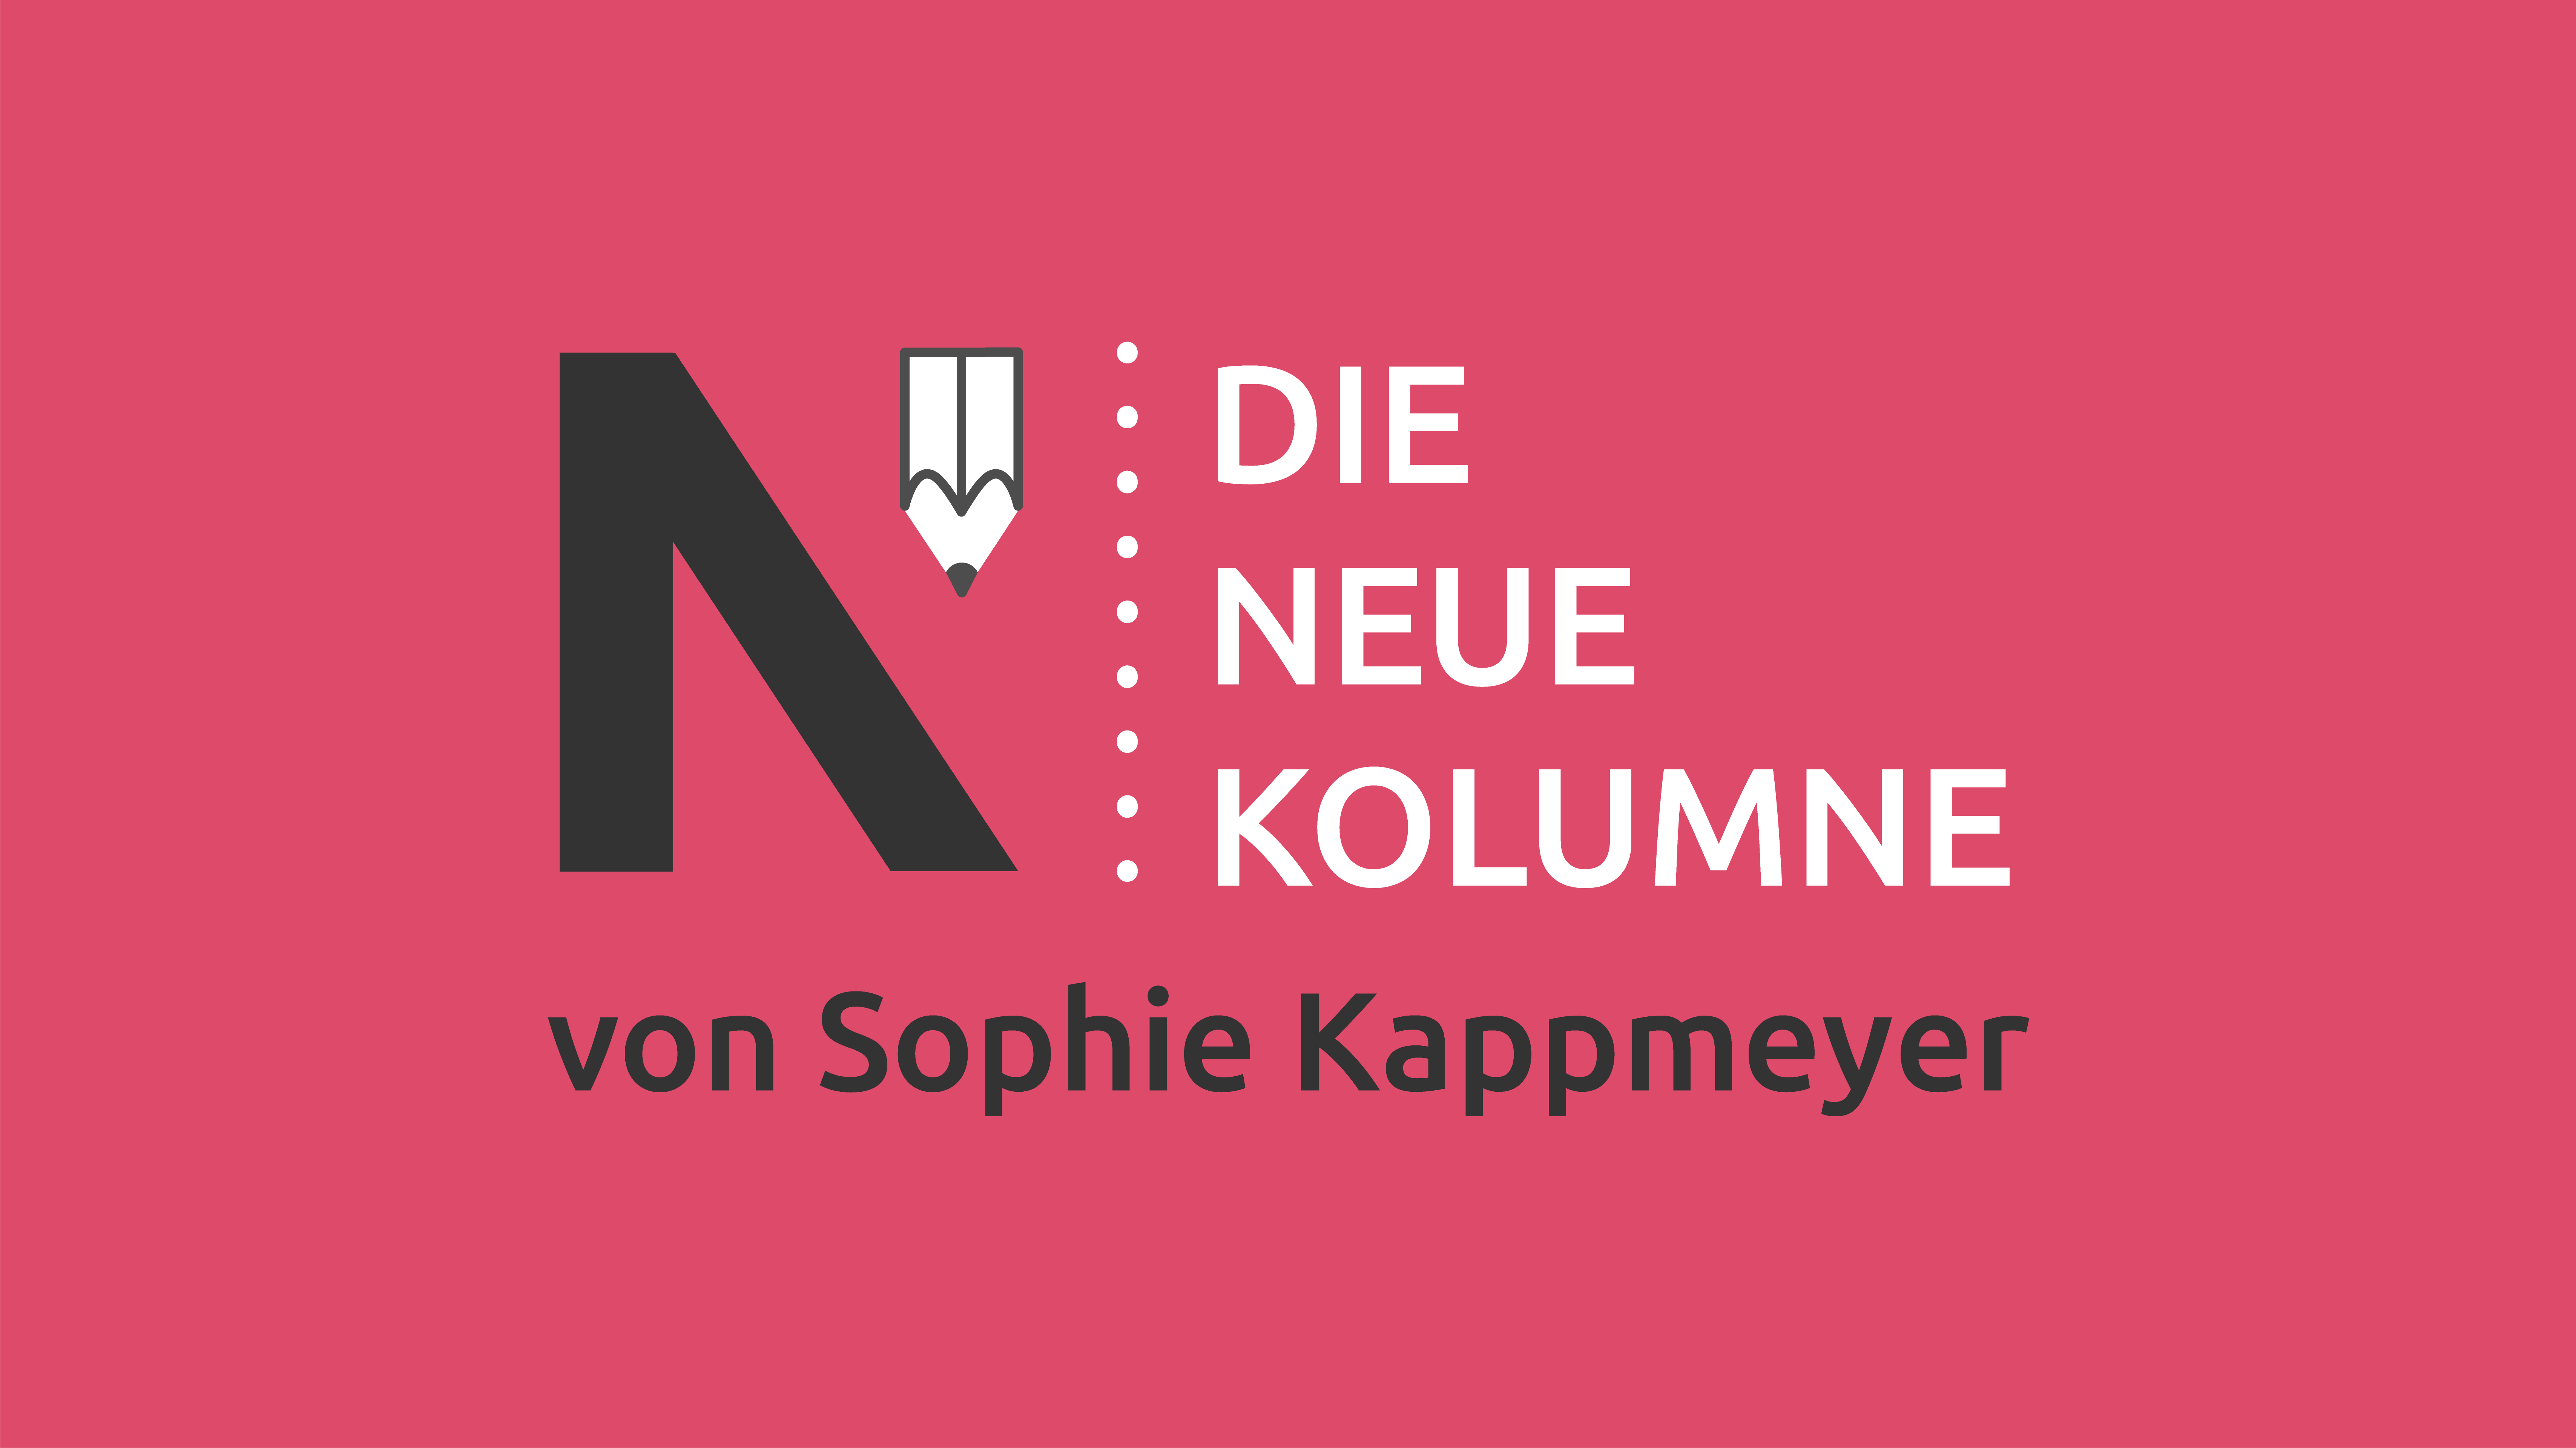 Das Logo von Die Neue Norm auf pinkem Grund. Rechts davon steht: die Neue Kolumne. Unten steht: von Sophie Kappmeyer.